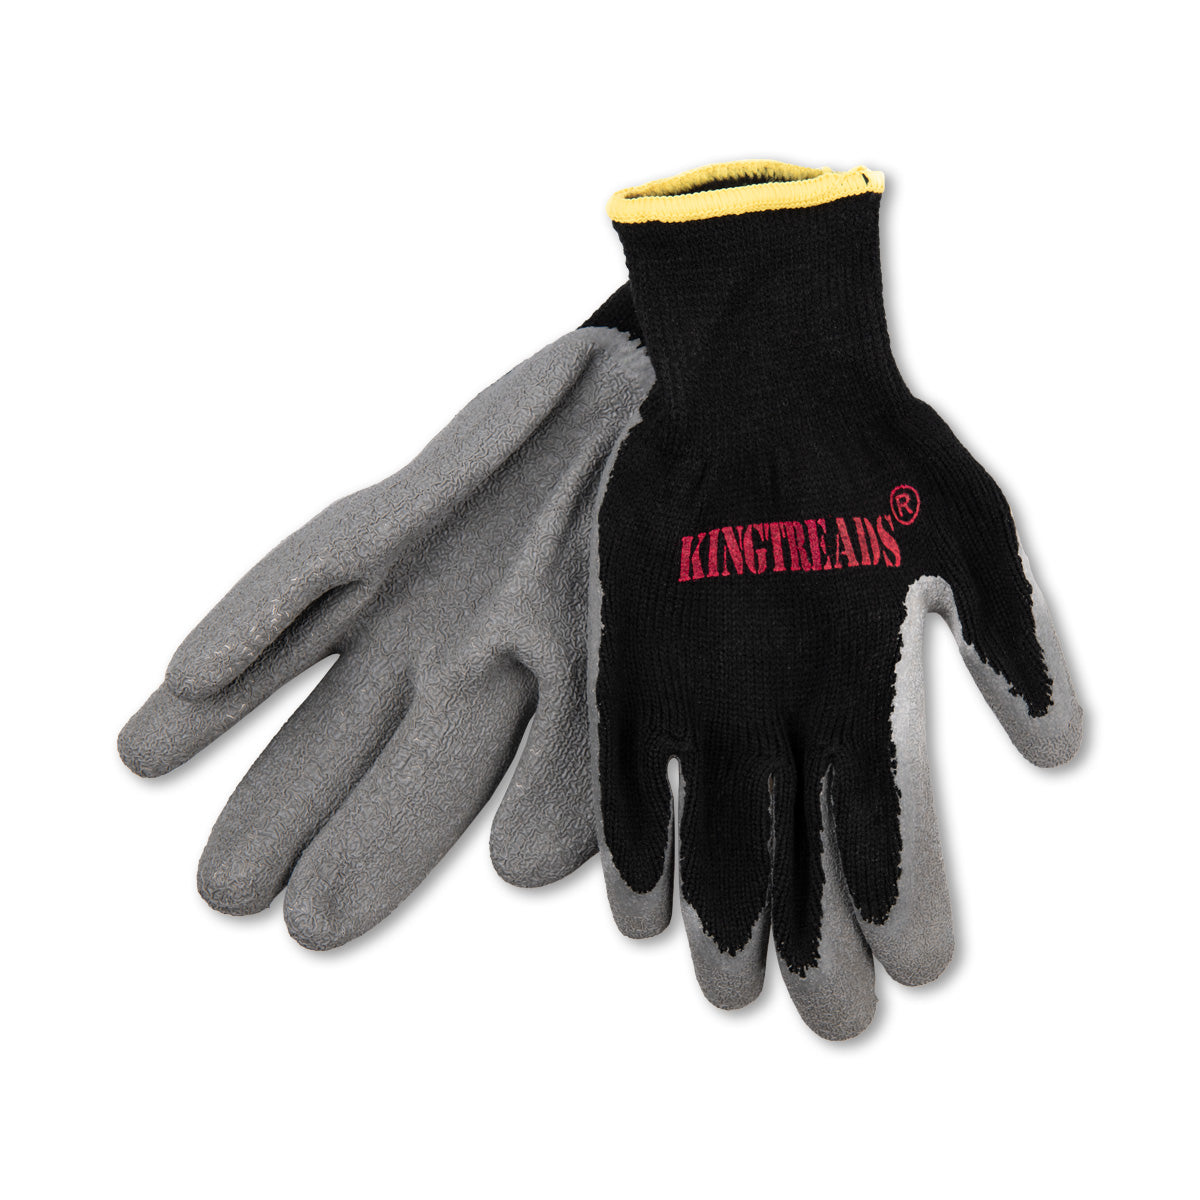 Mega-grip Lined Work Gloves